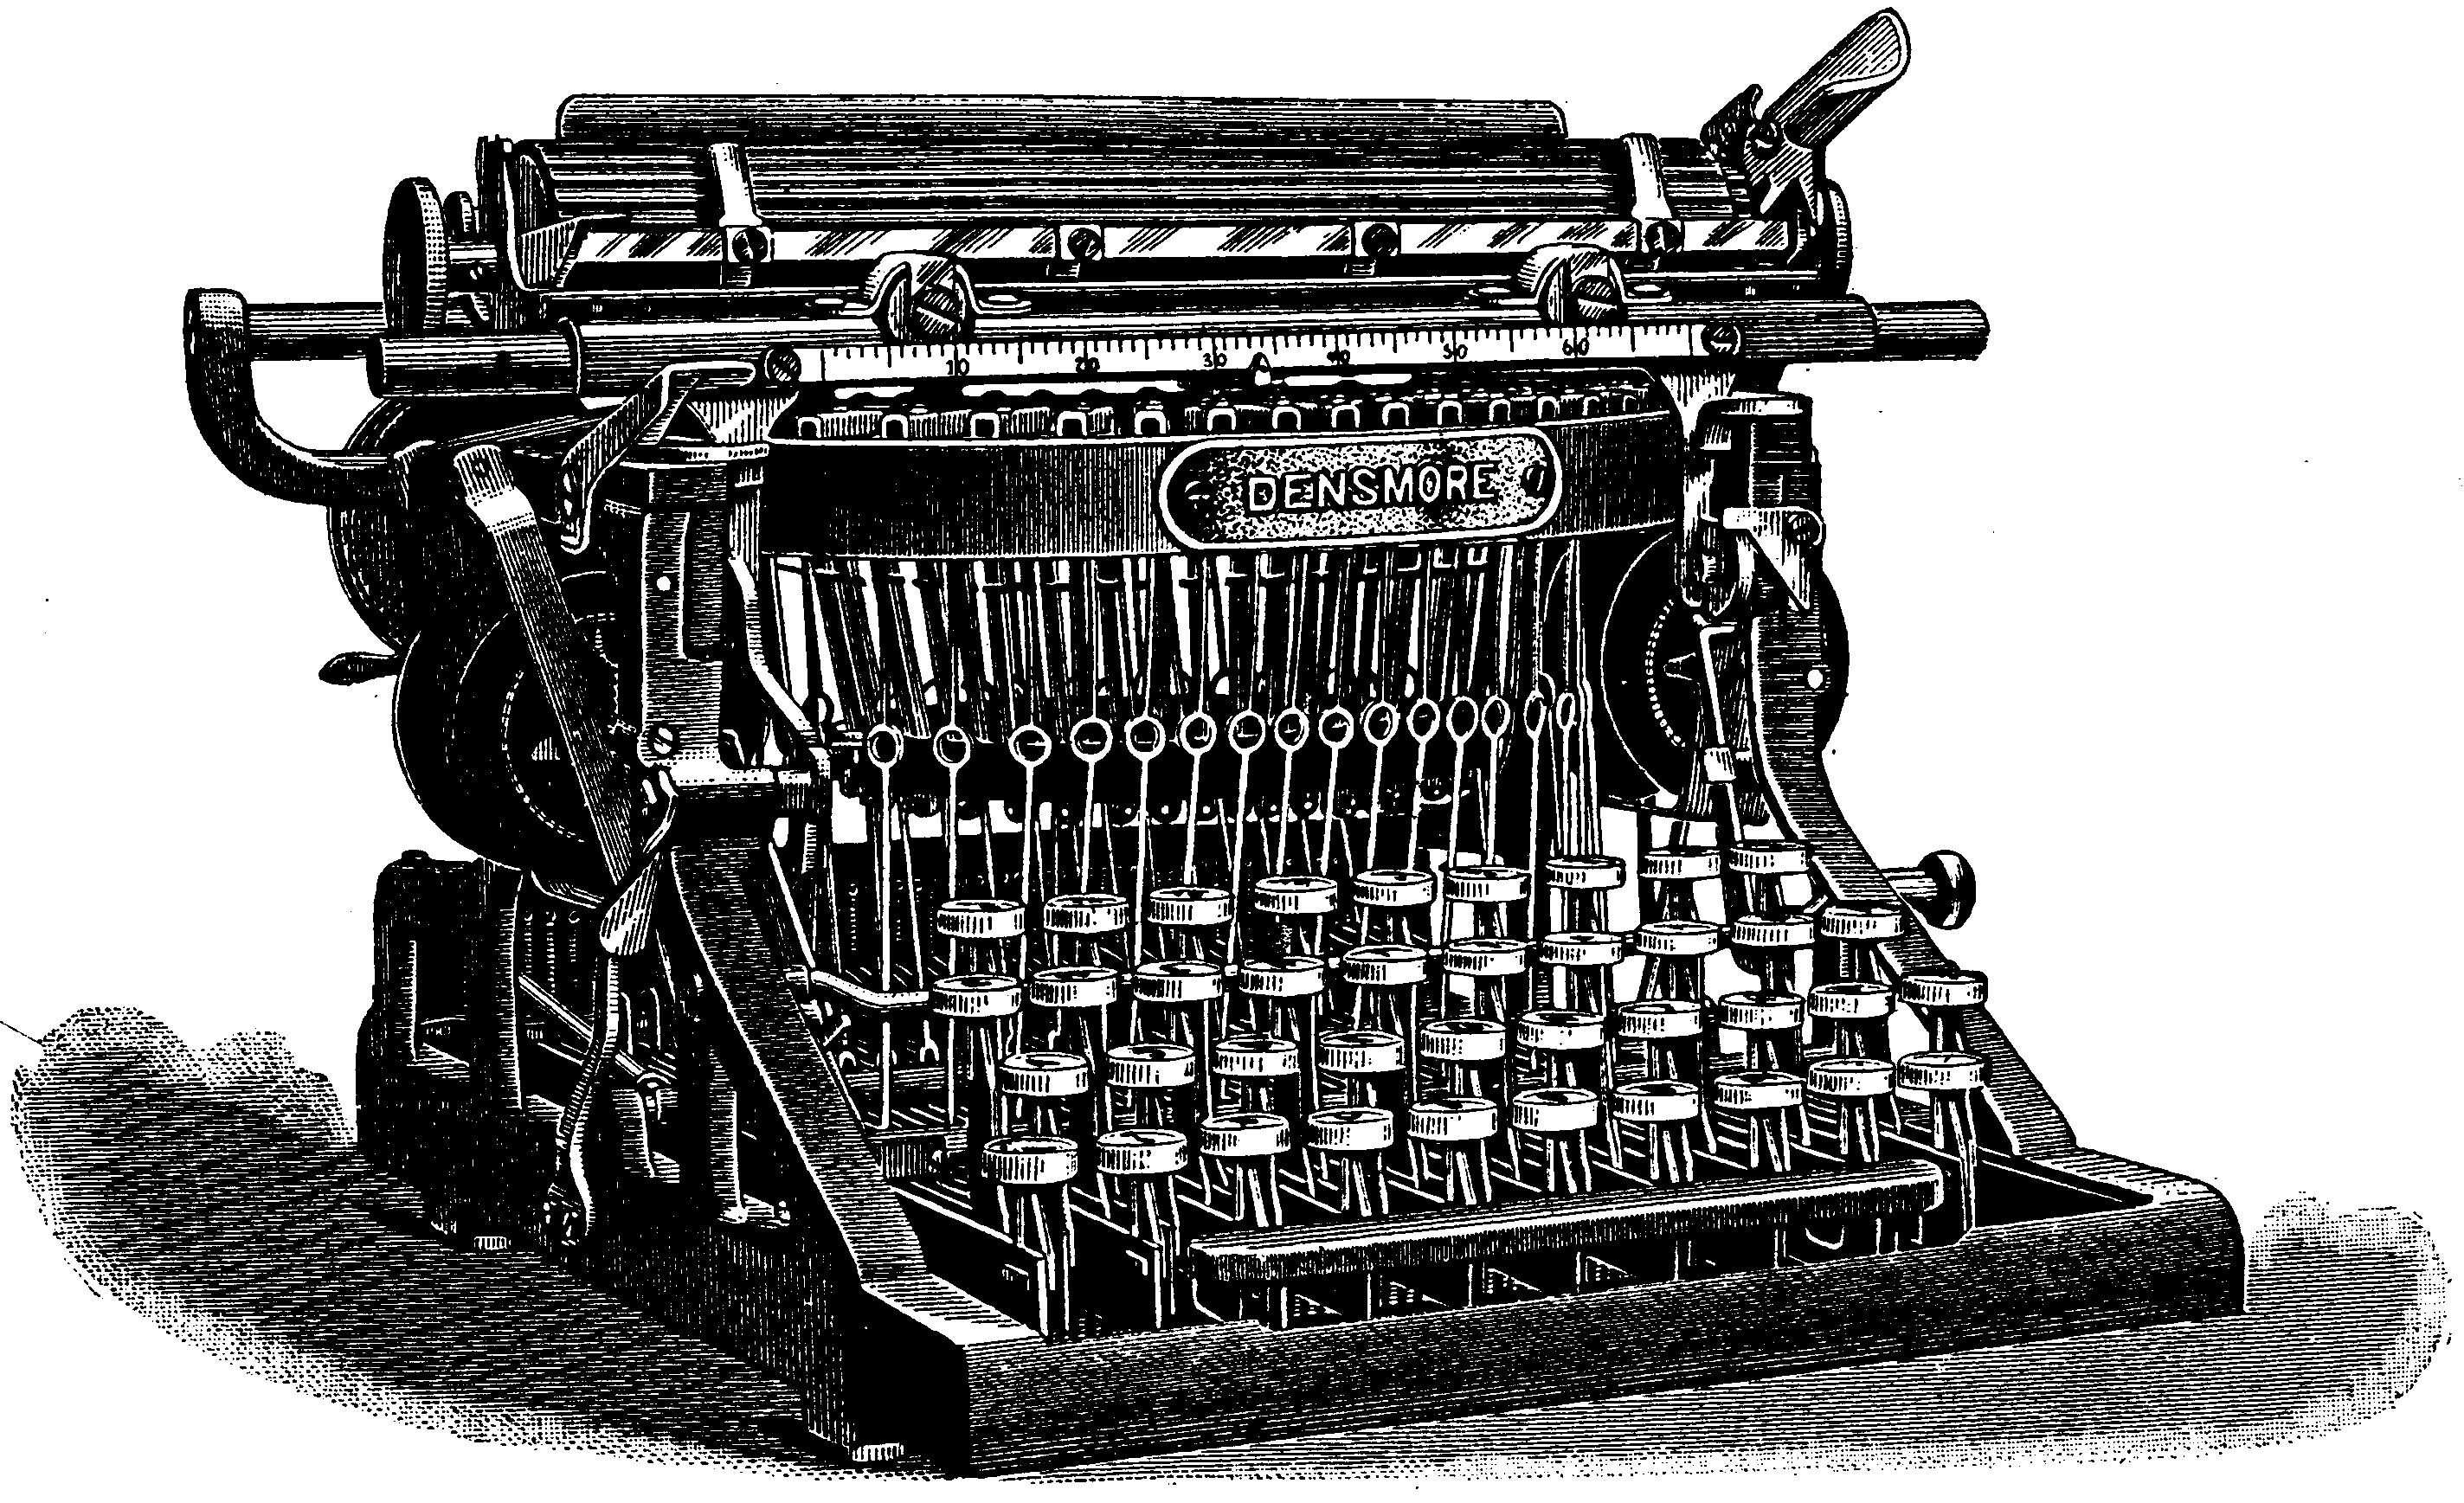 「Densmore Typewriter」